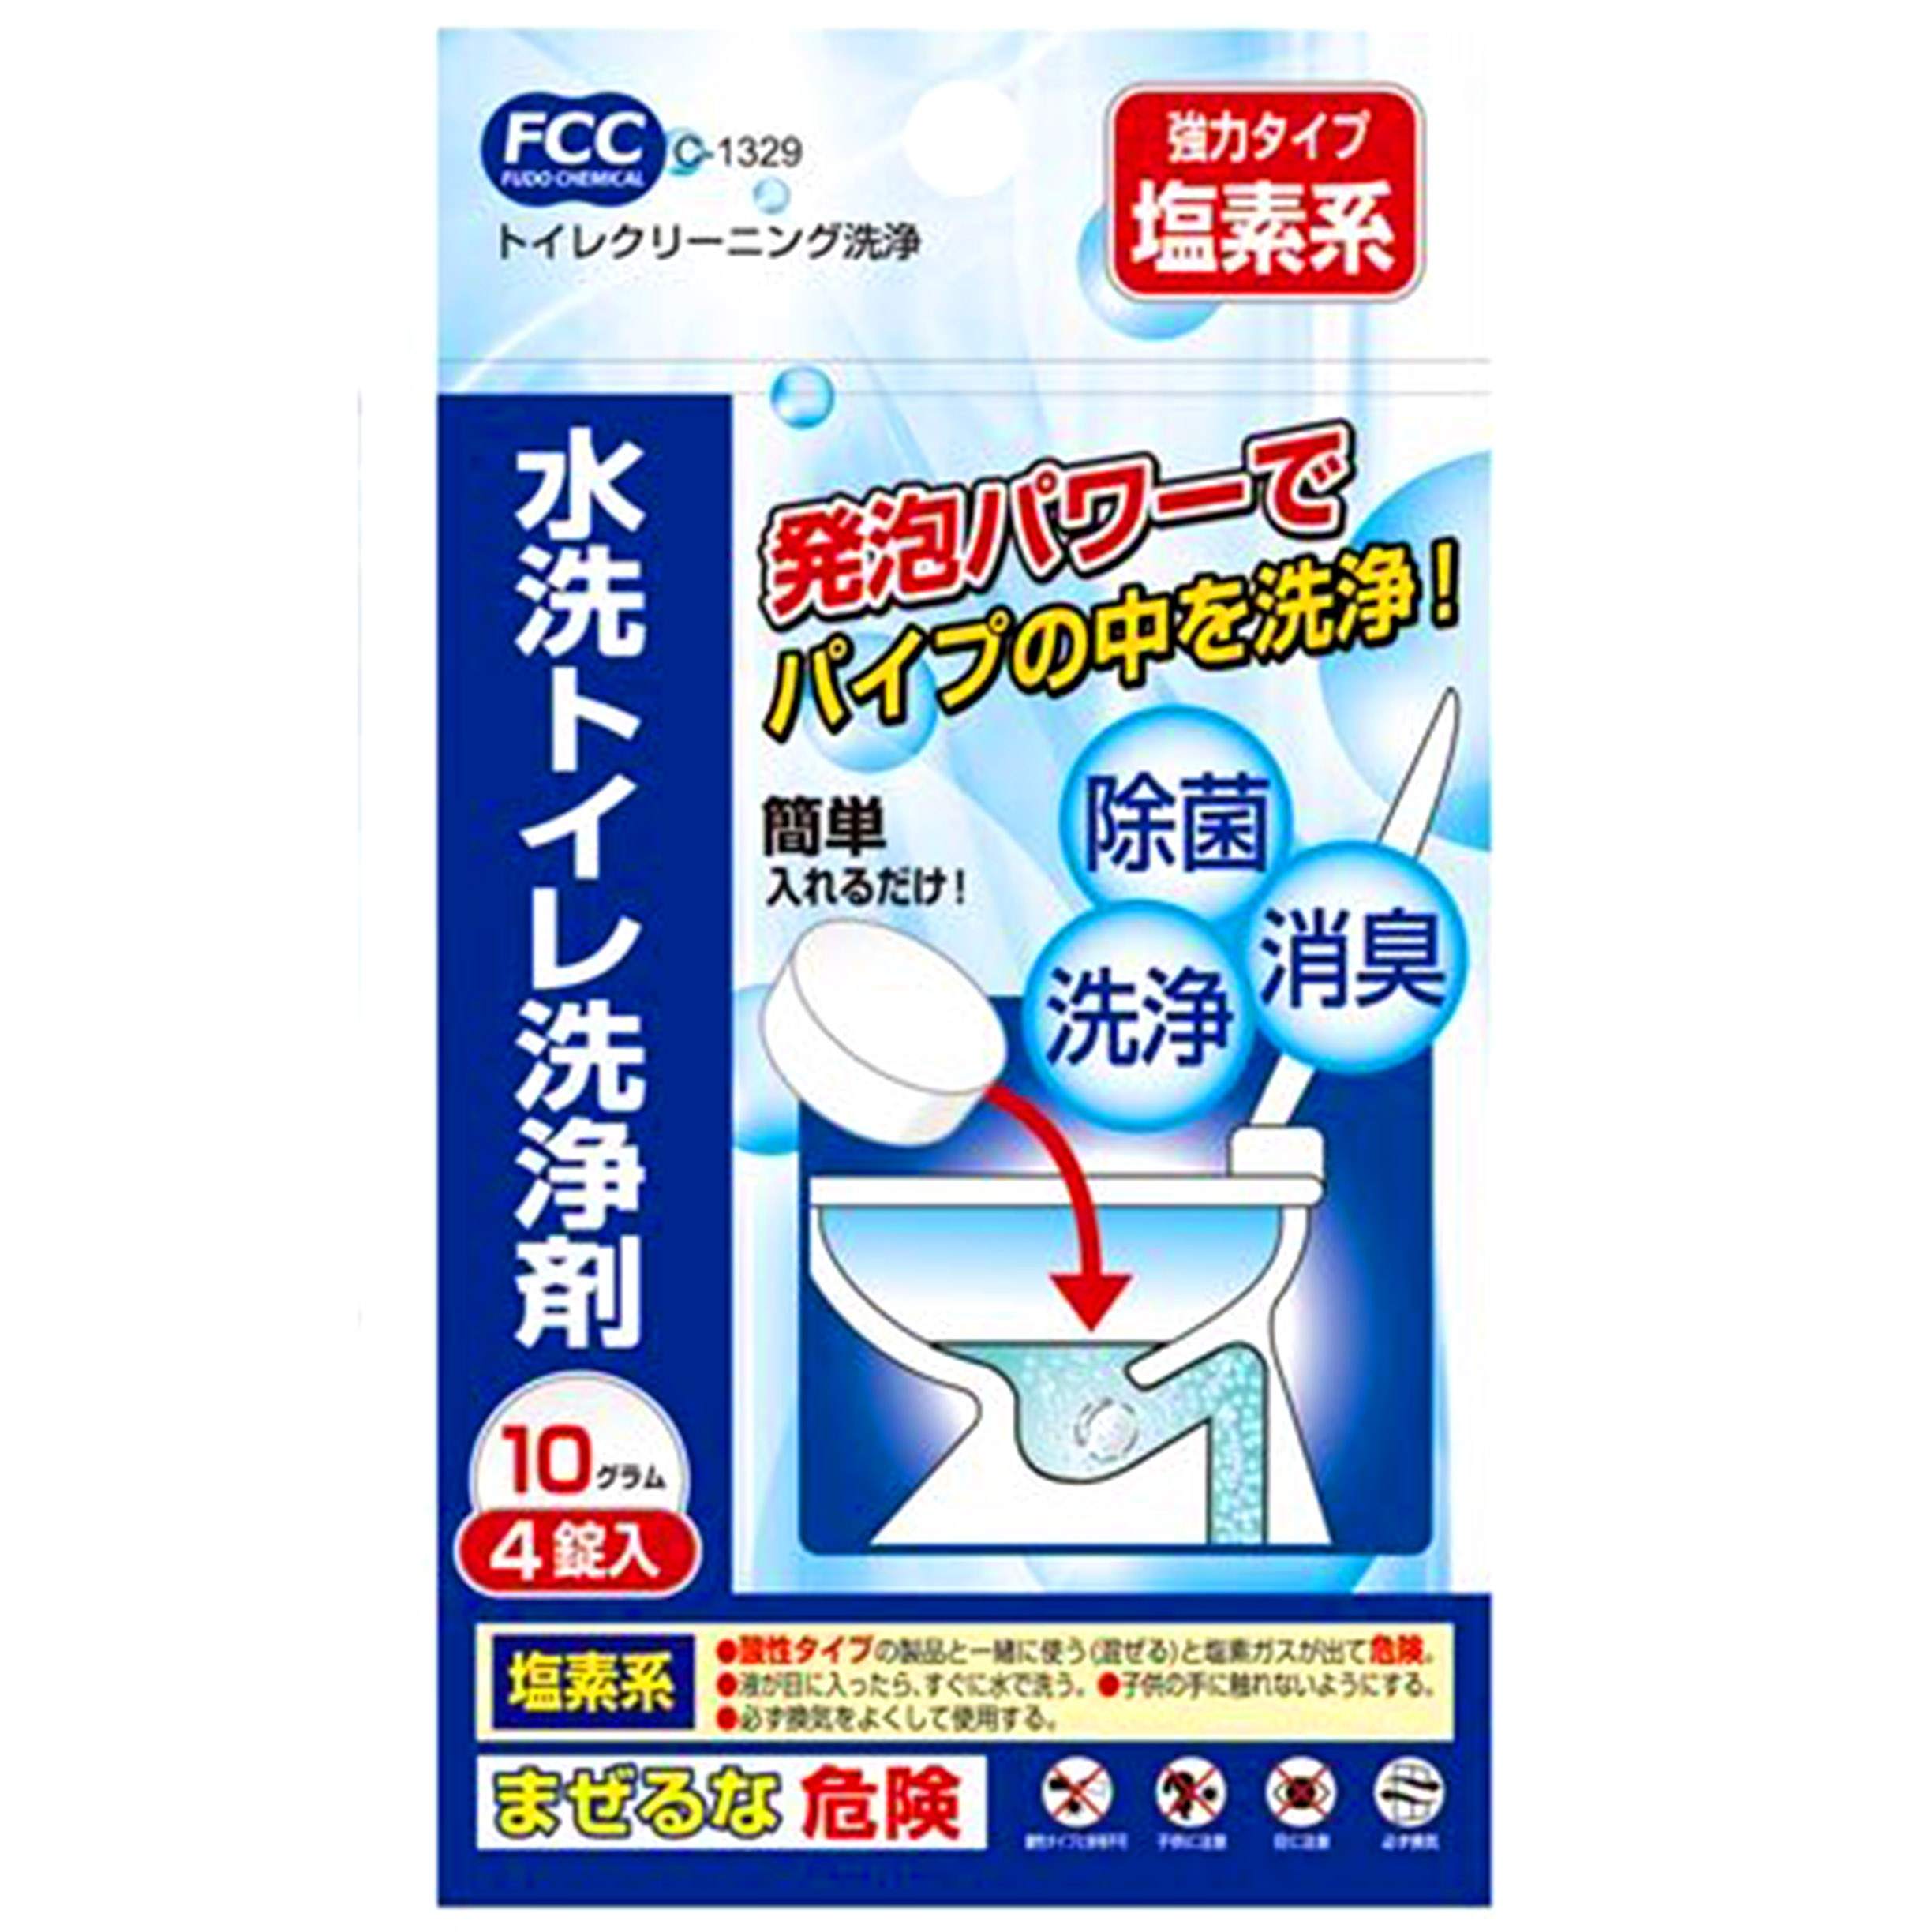 馬桶強力脫臭清潔片(4入)-不動化學 塩素系 弱鹼性 發泡錠 浴室清潔 FCC 日本進口